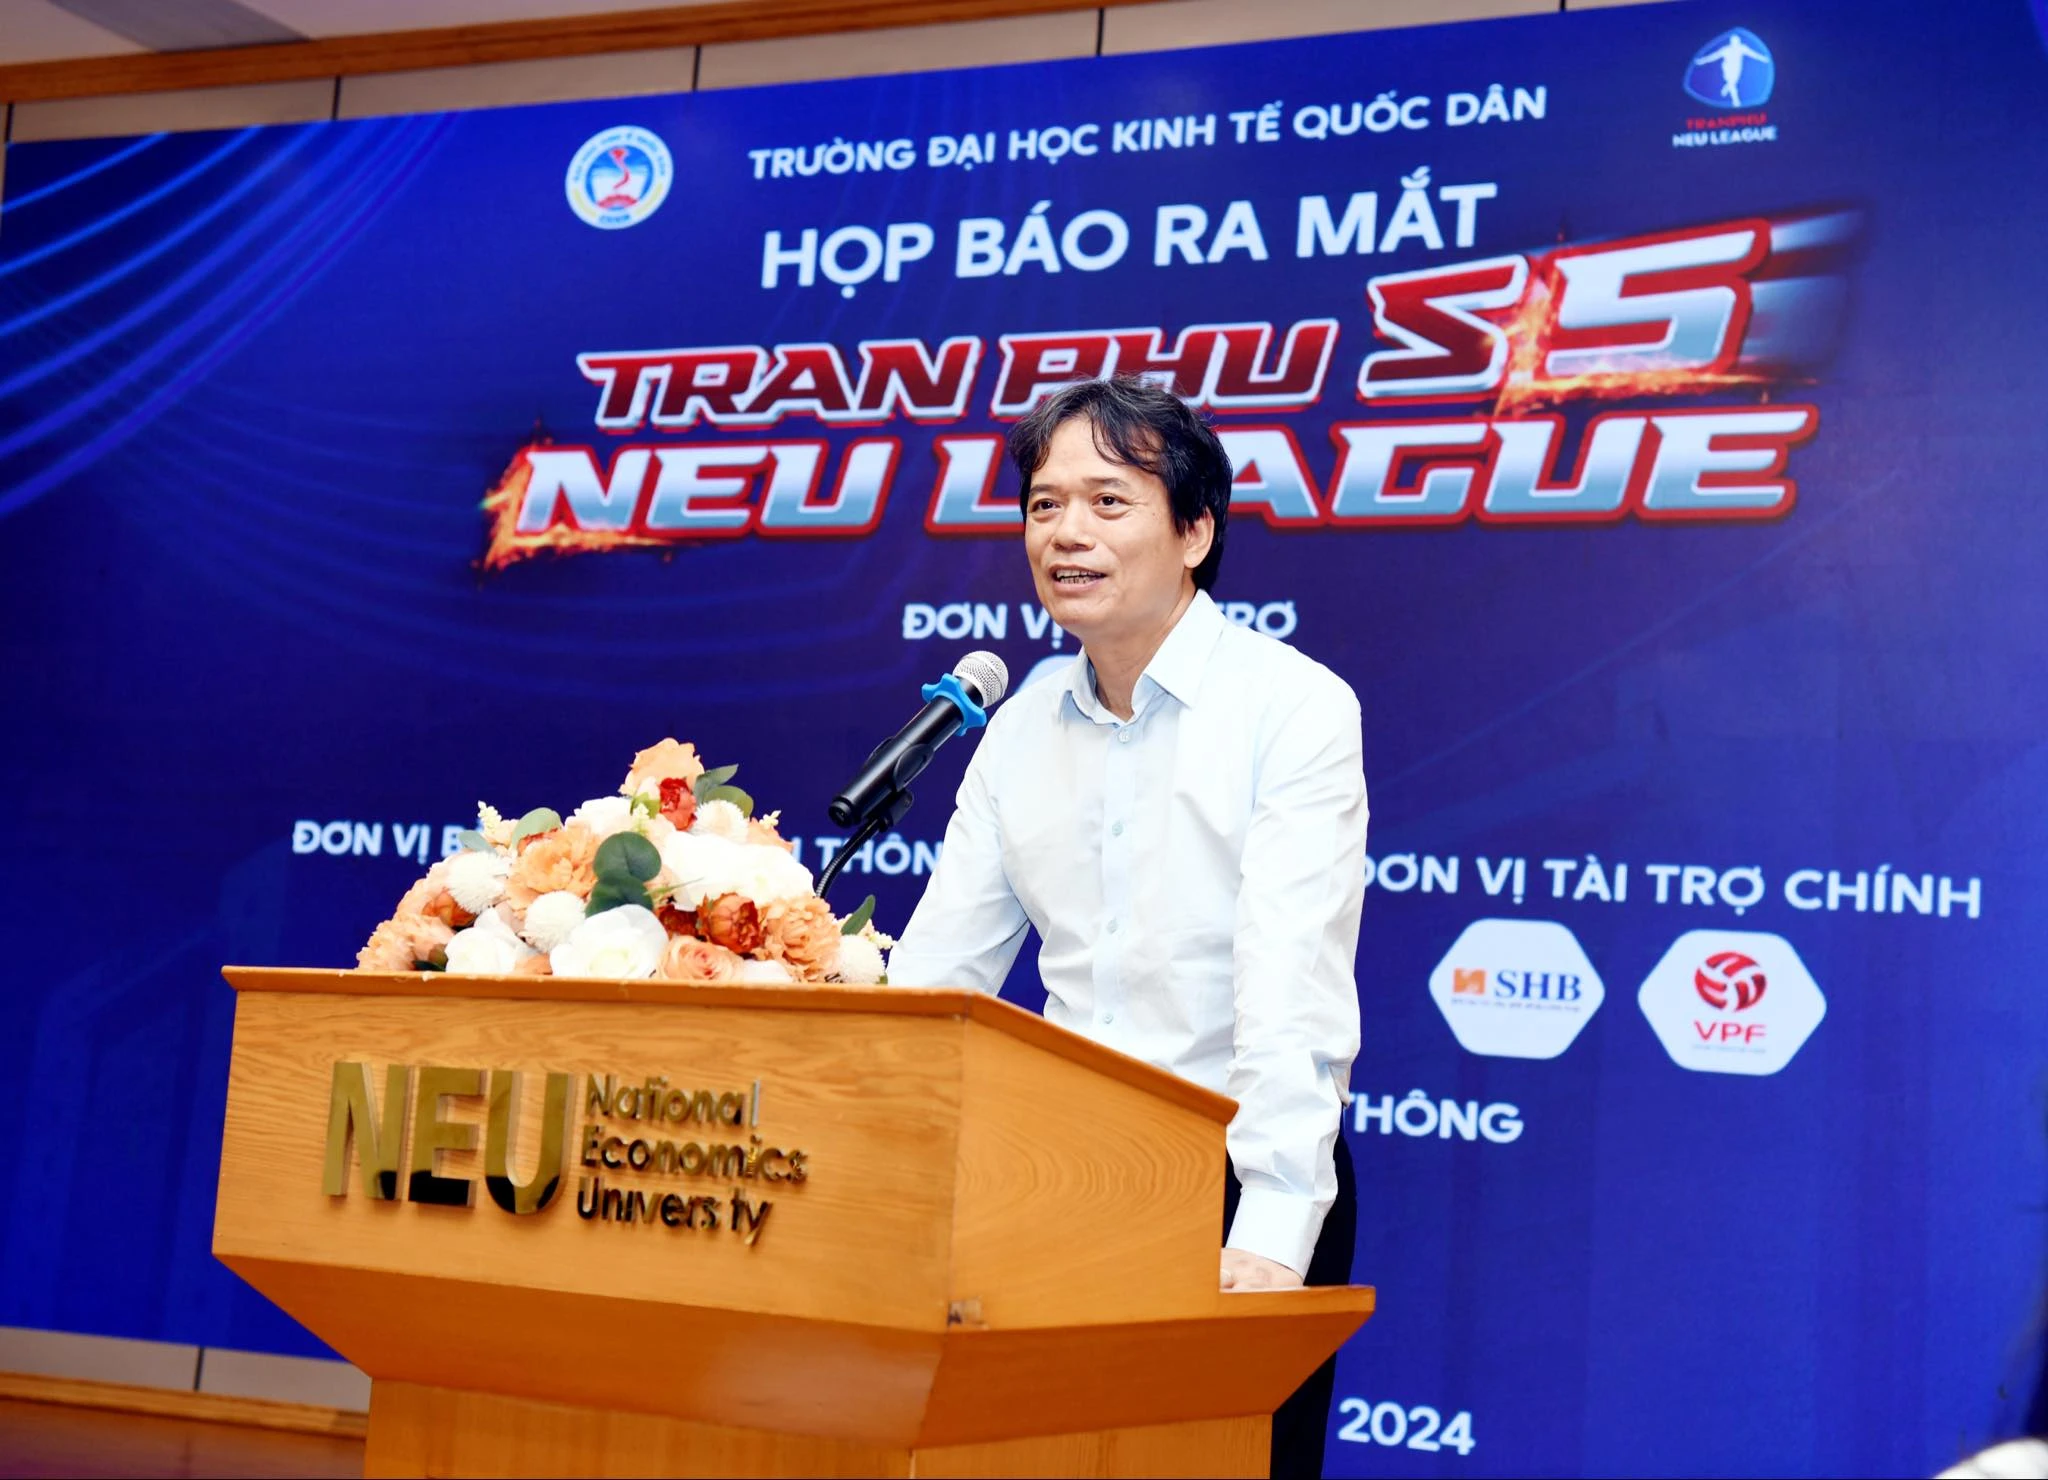 Trung vệ đội tuyển Việt Nam xỏ giày tham gia sân chơi bóng đá sinh viên